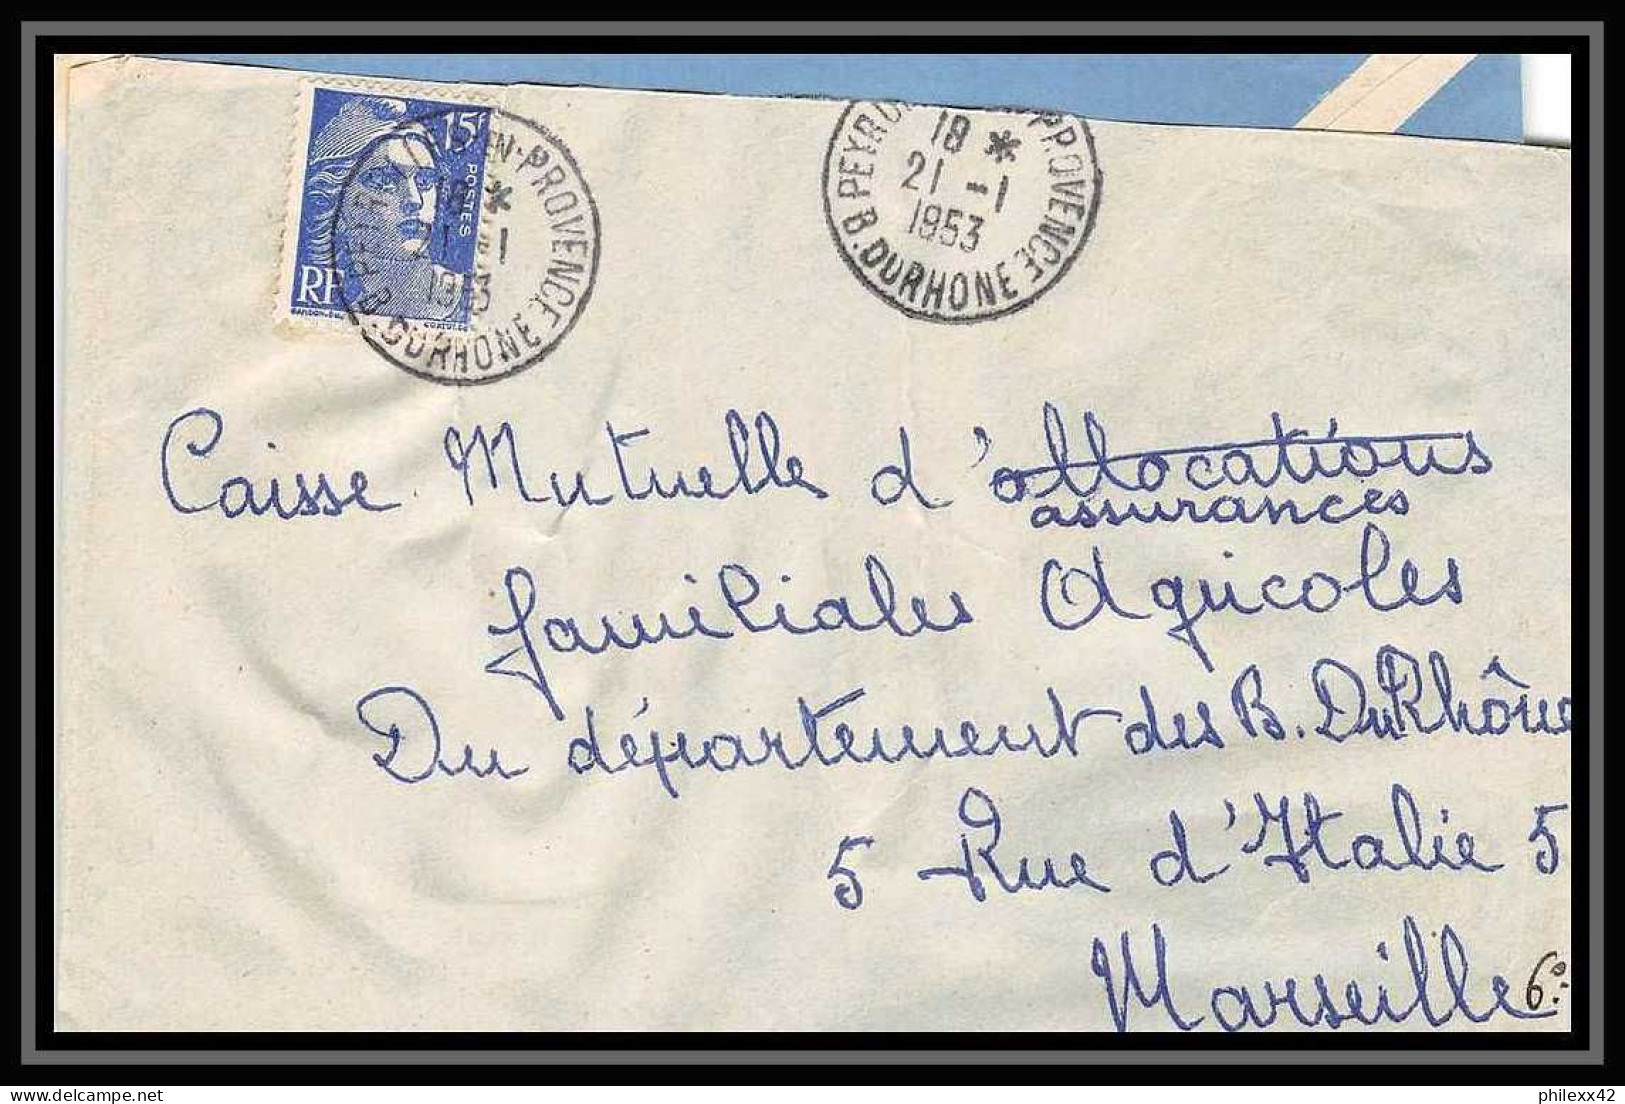 114369 lot de 12 Lettres +divers cover Bouches du rhone Peyrolles